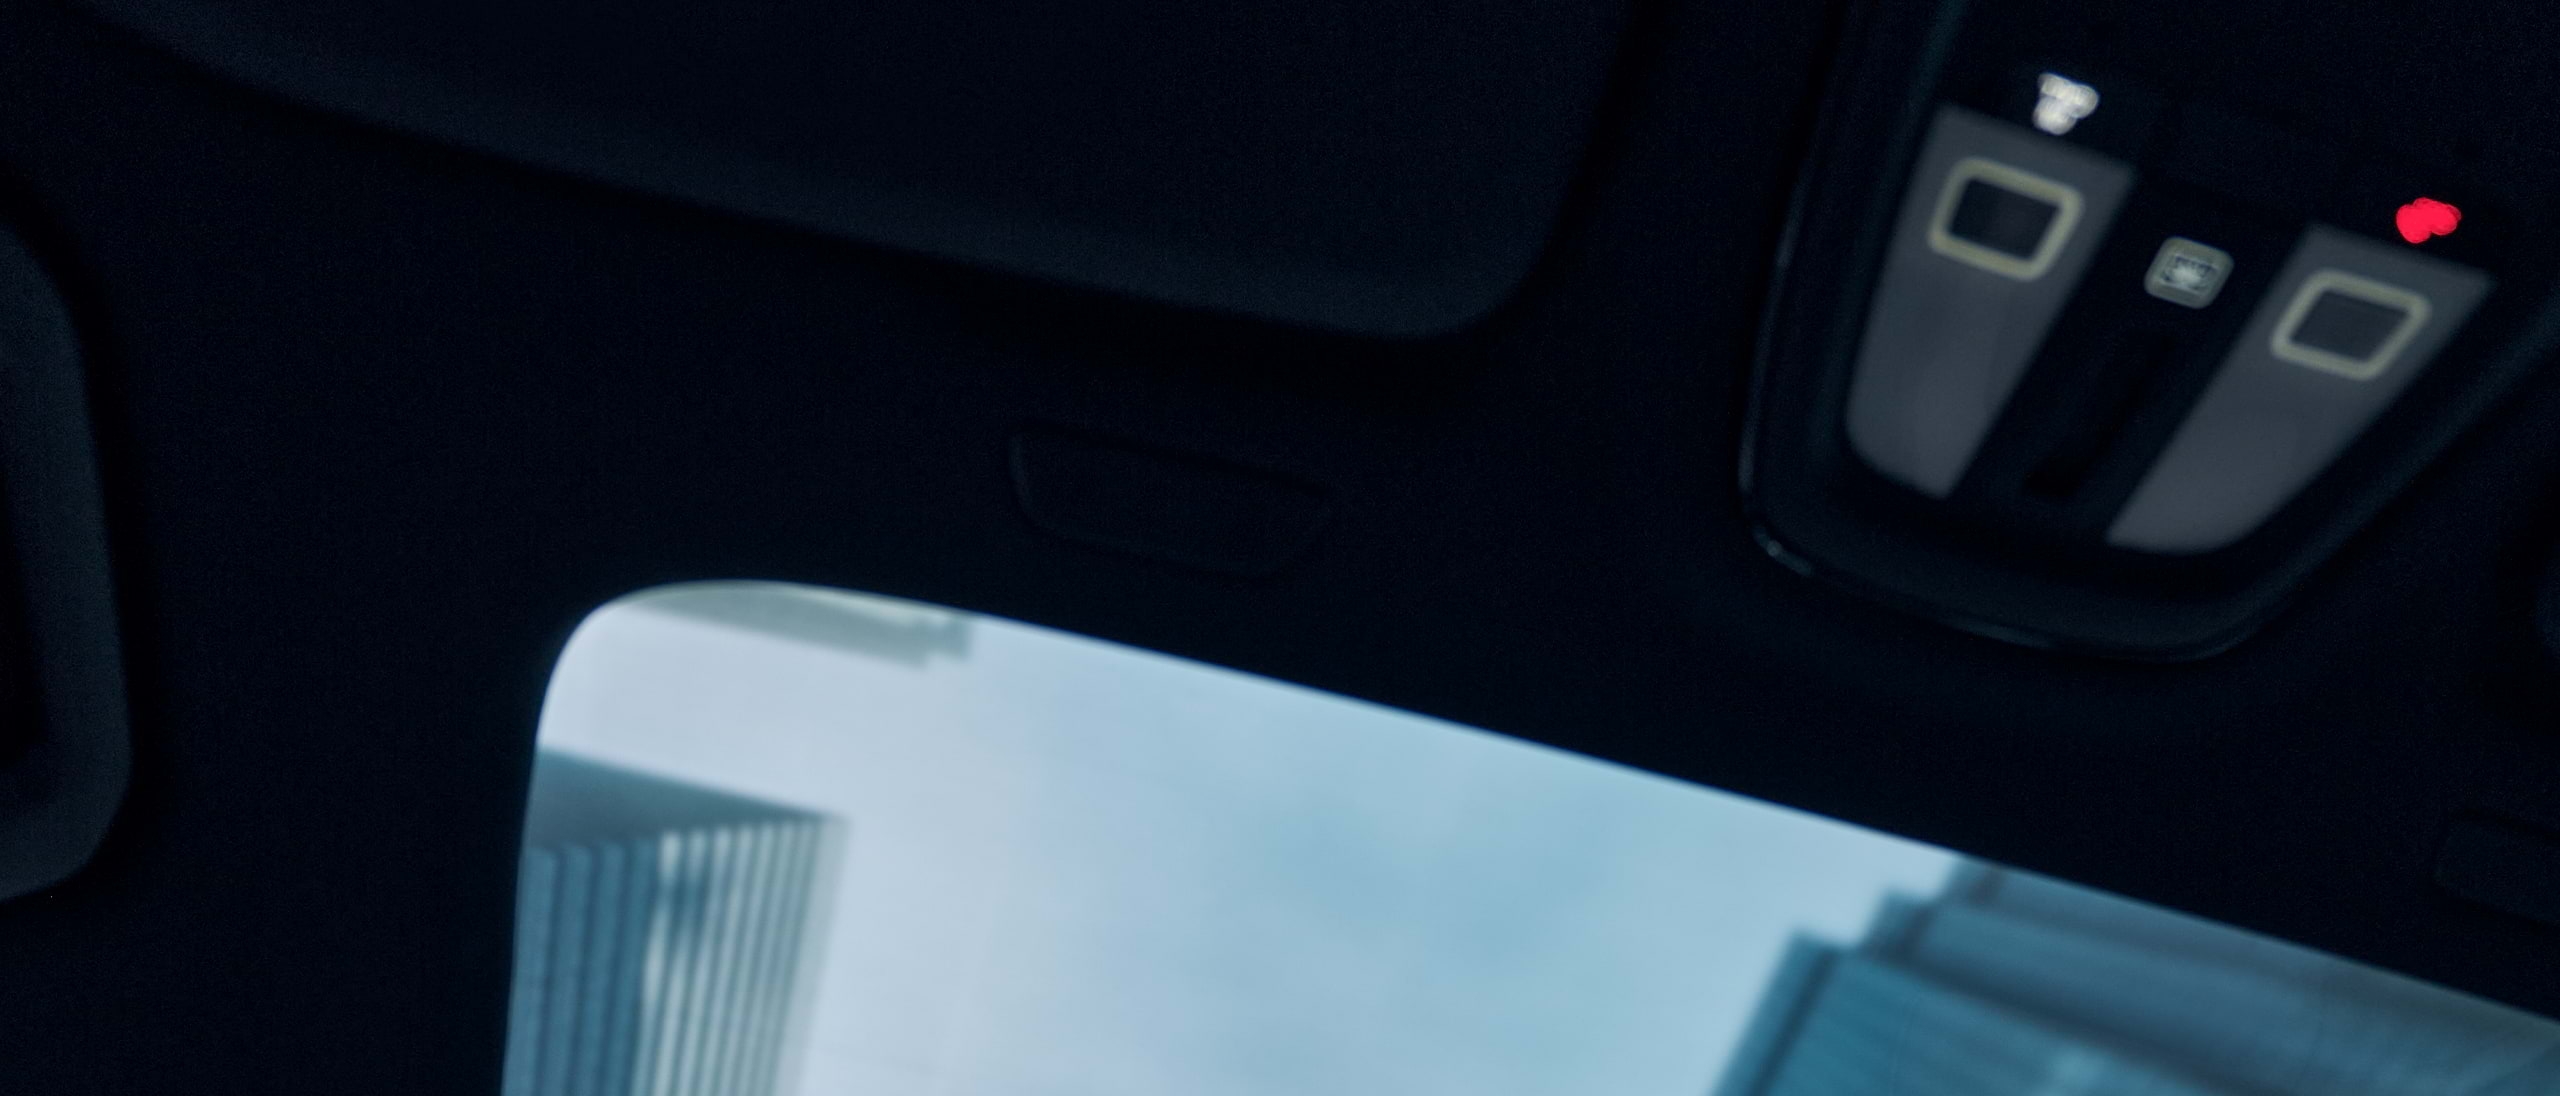 Arranha-céus visíveis através do teto panorâmico de um automóvel Volvo em movimento.